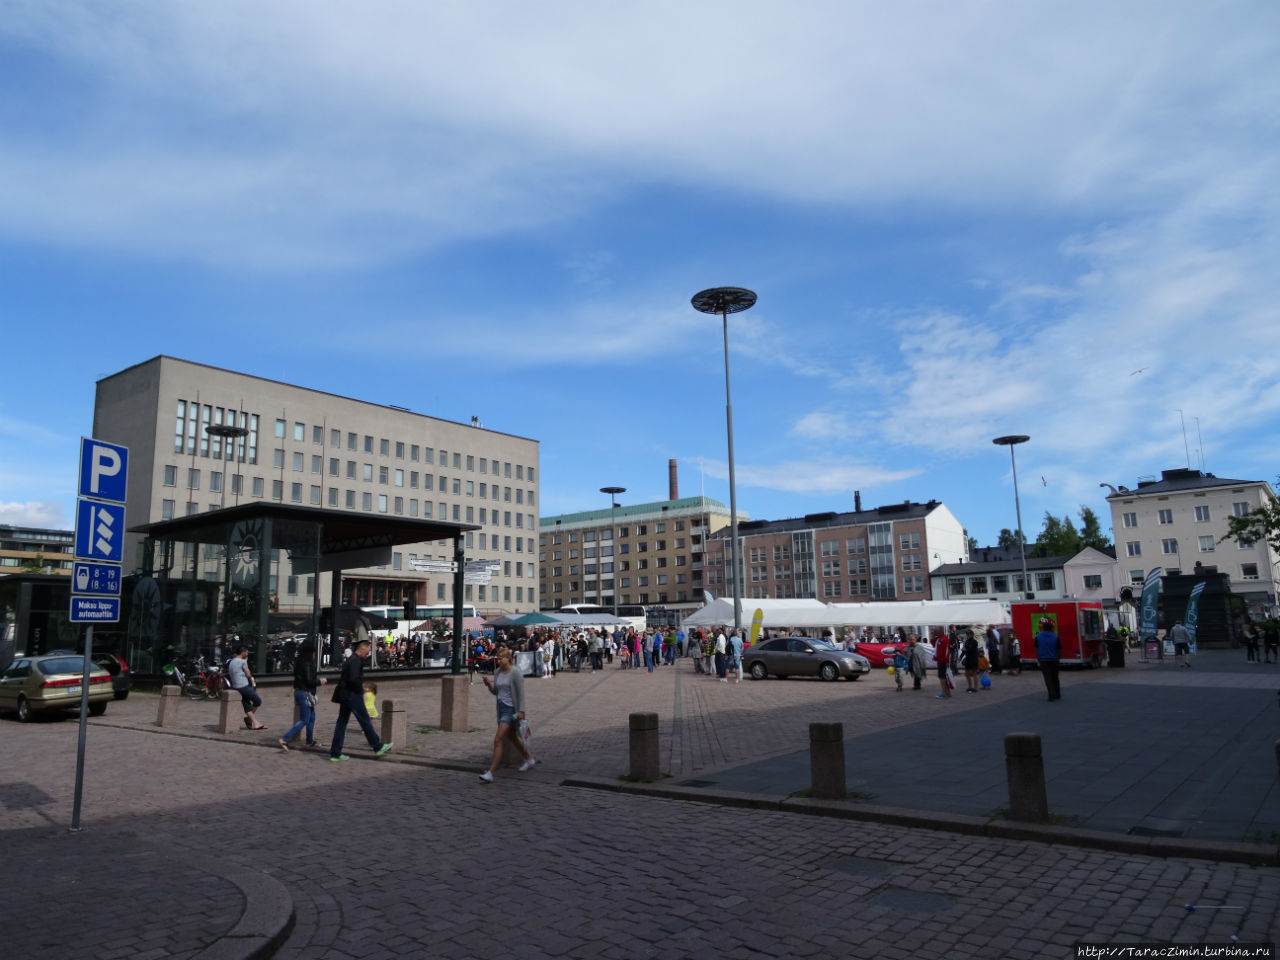 Ратушная (рыночная) площадь Котка, Финляндия